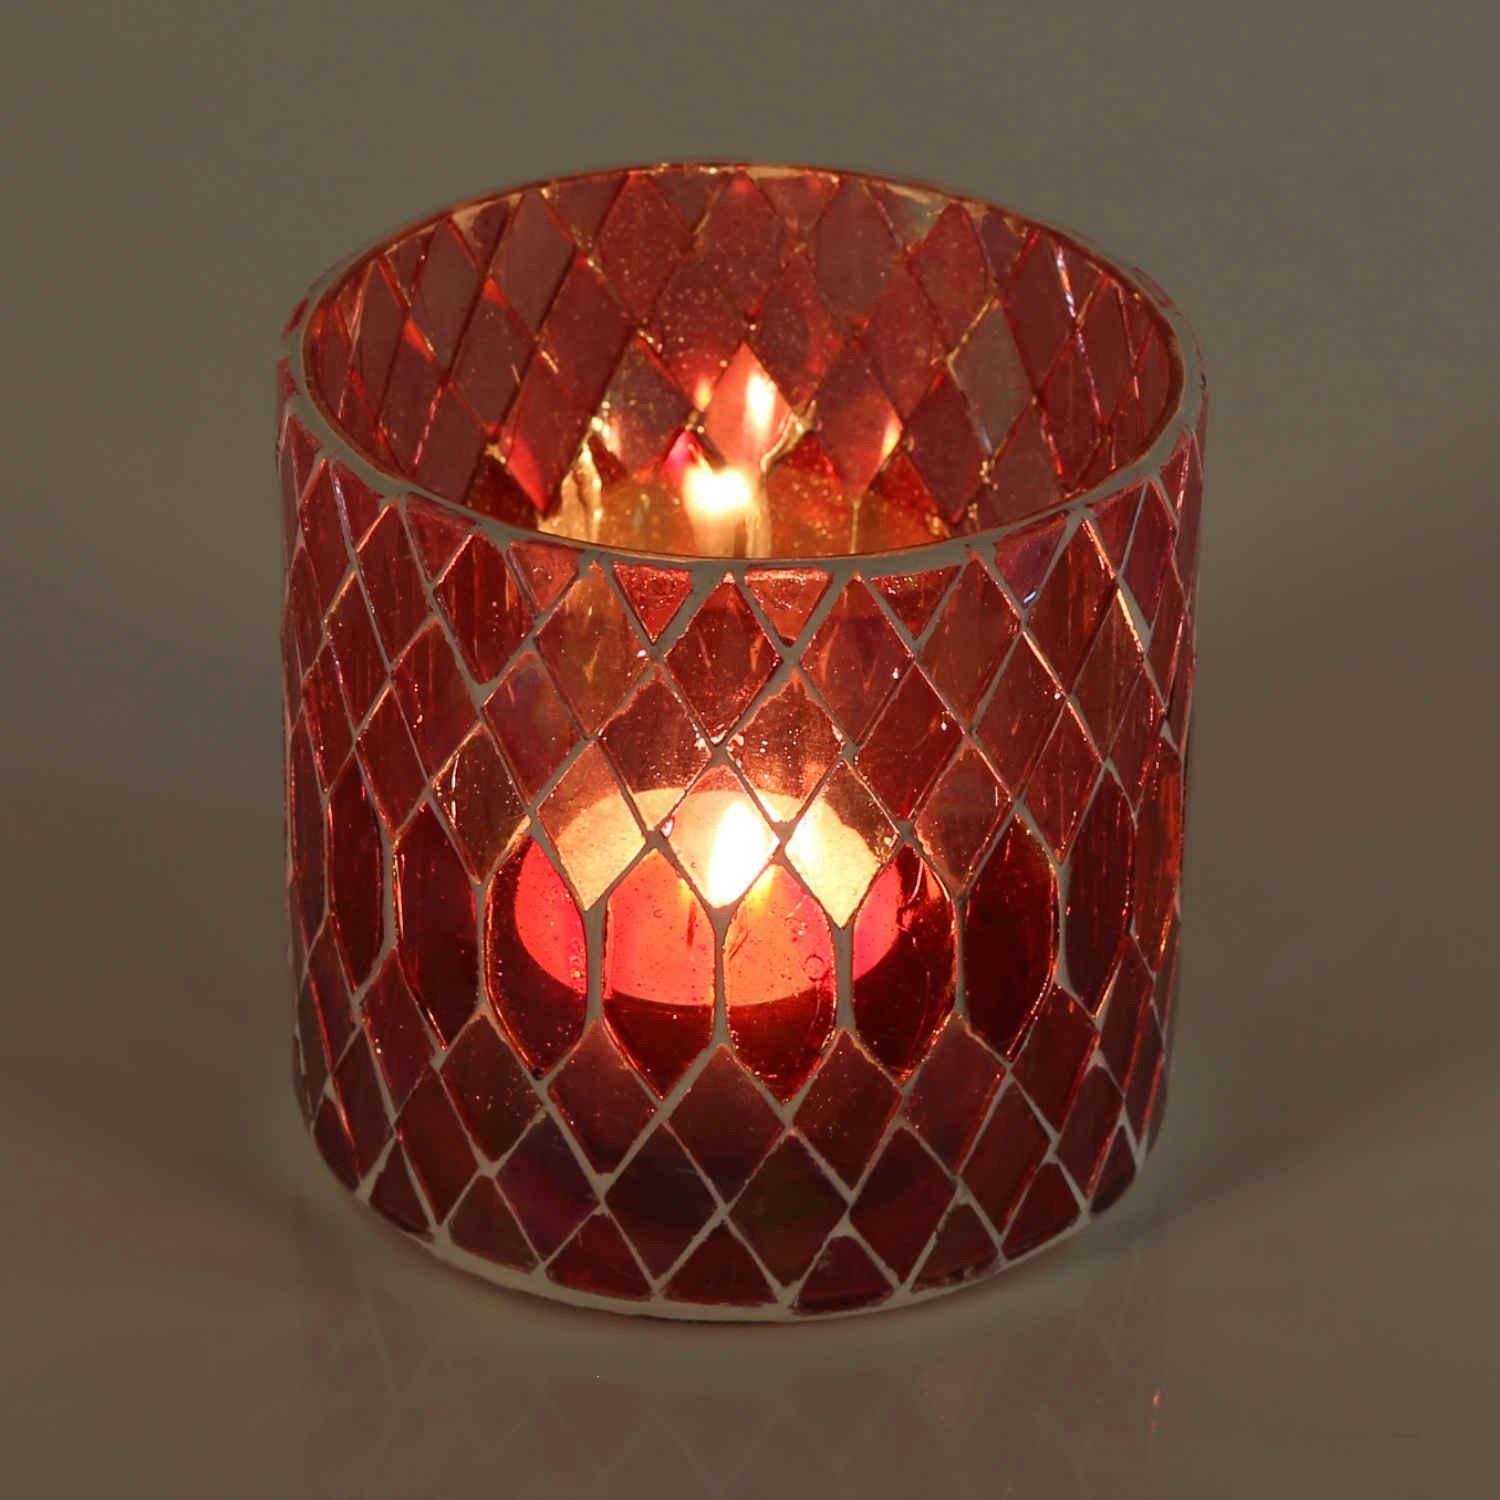 Casa Moro Windlicht Marokkanisches Mosaik Windlicht Rayan Rot rund aus Glas (Weihnachten Teelichthalter Boho Chic Kerzenständer Kerzenhalter, Glaswindlicht in den Größen S und M oder als 2er Set bestellbar), Kunsthandwerk pur für einfach schöner wohnen